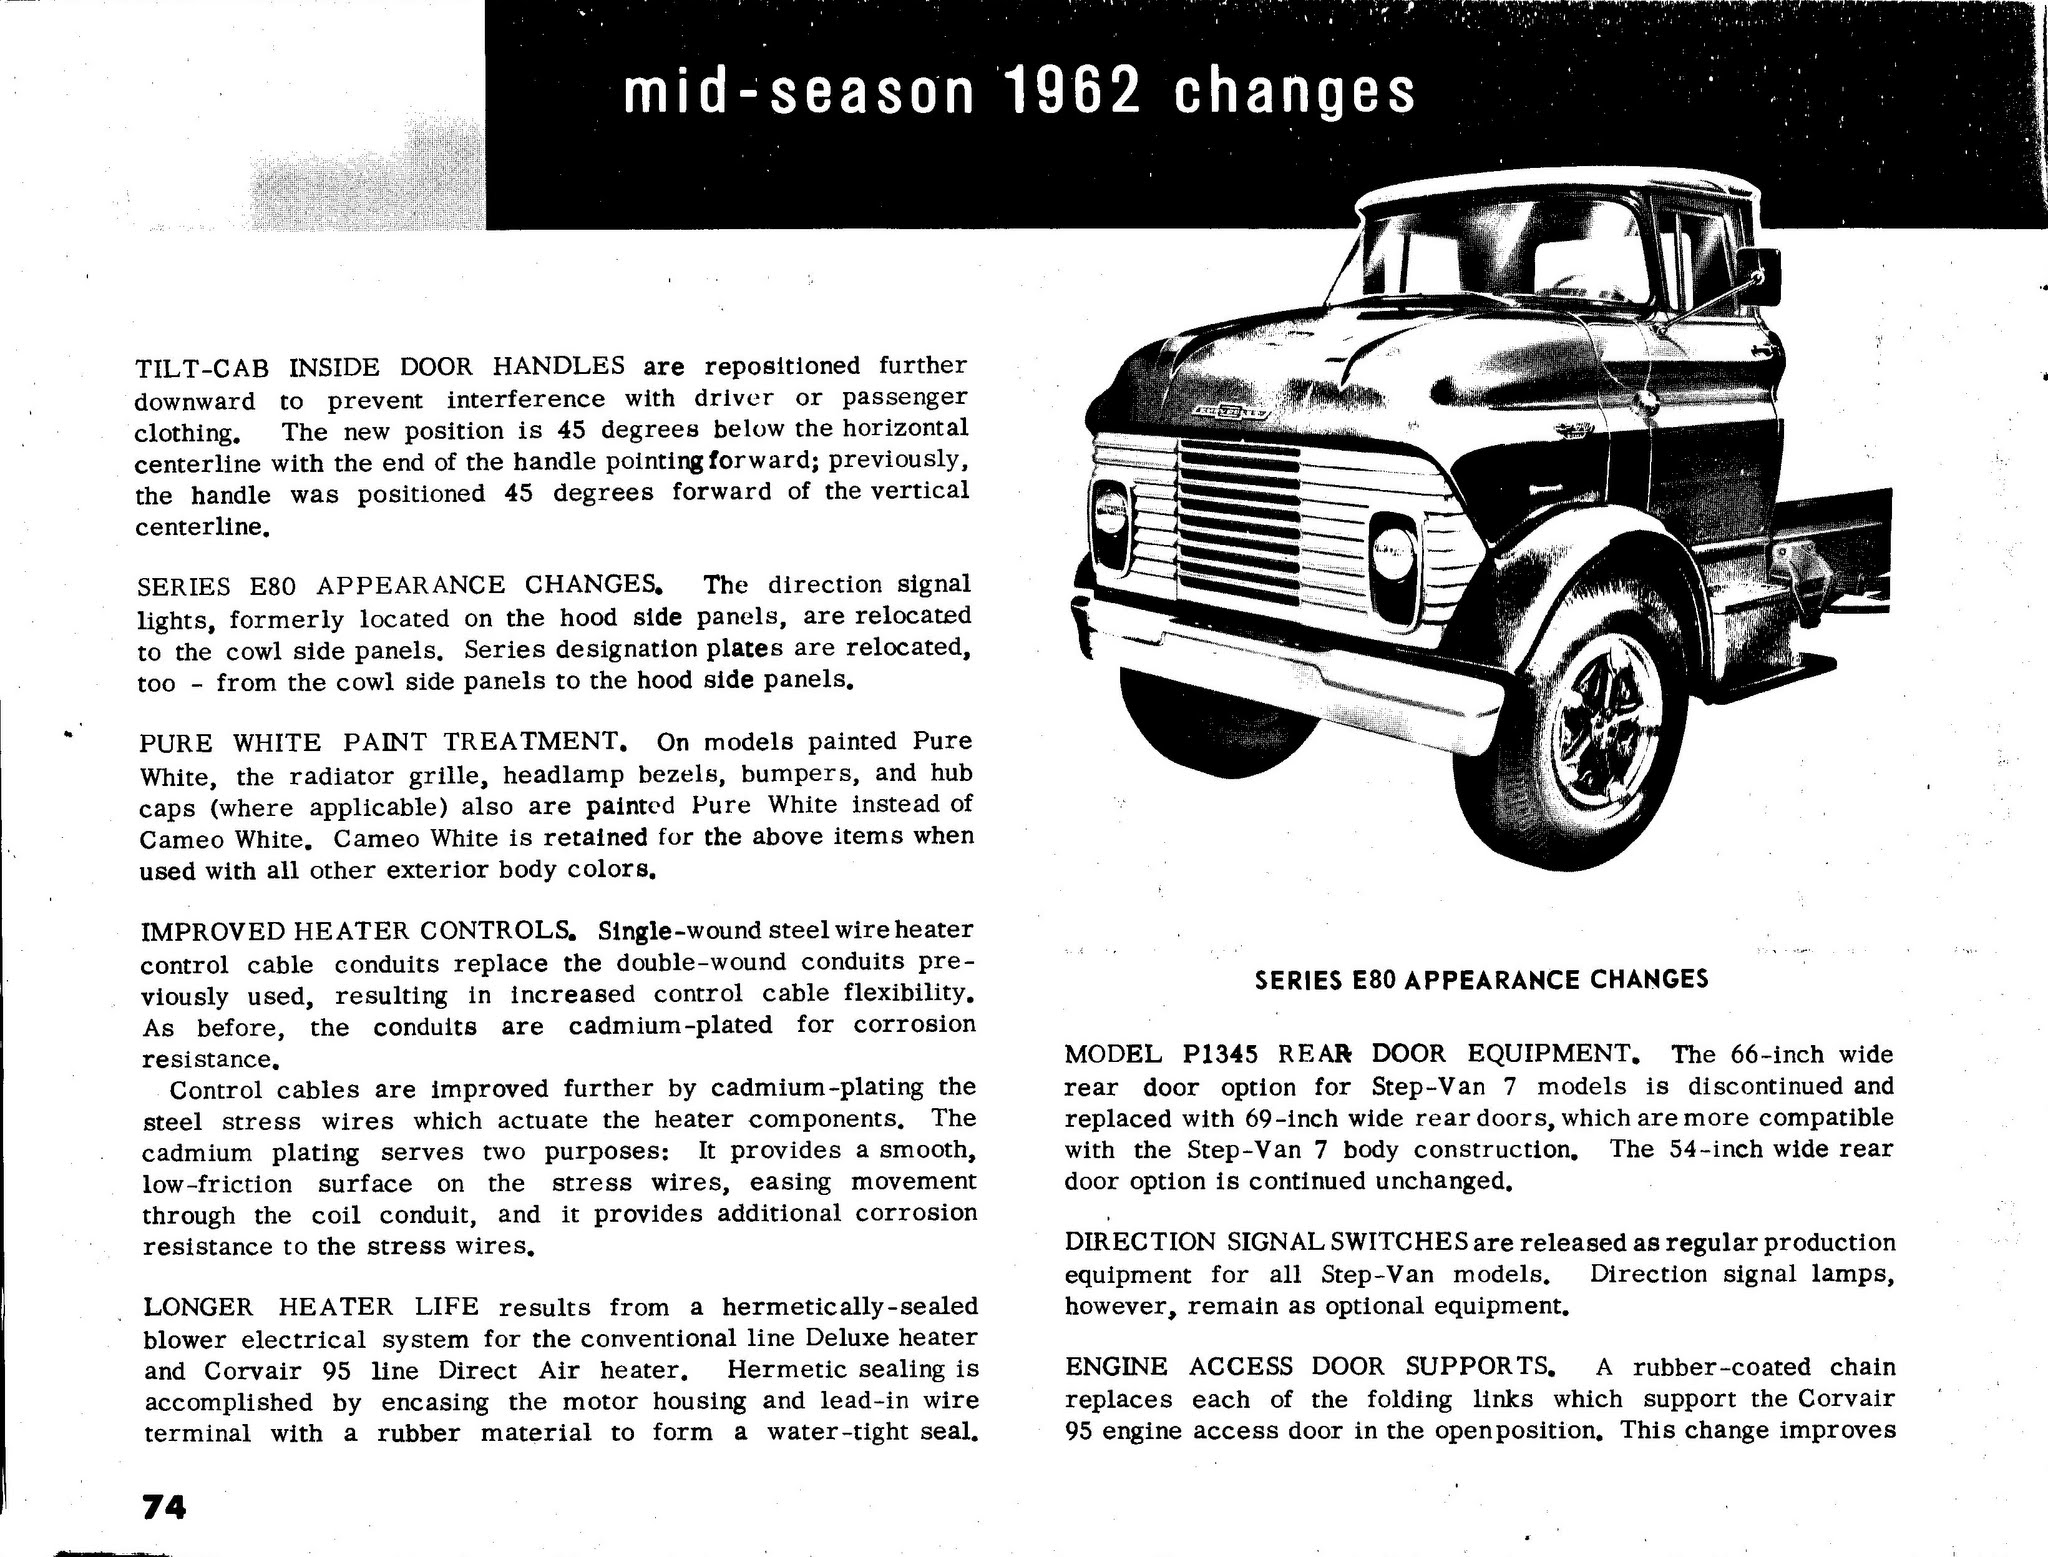 1963_Chevrolet_Truck_Engineering_Features-74